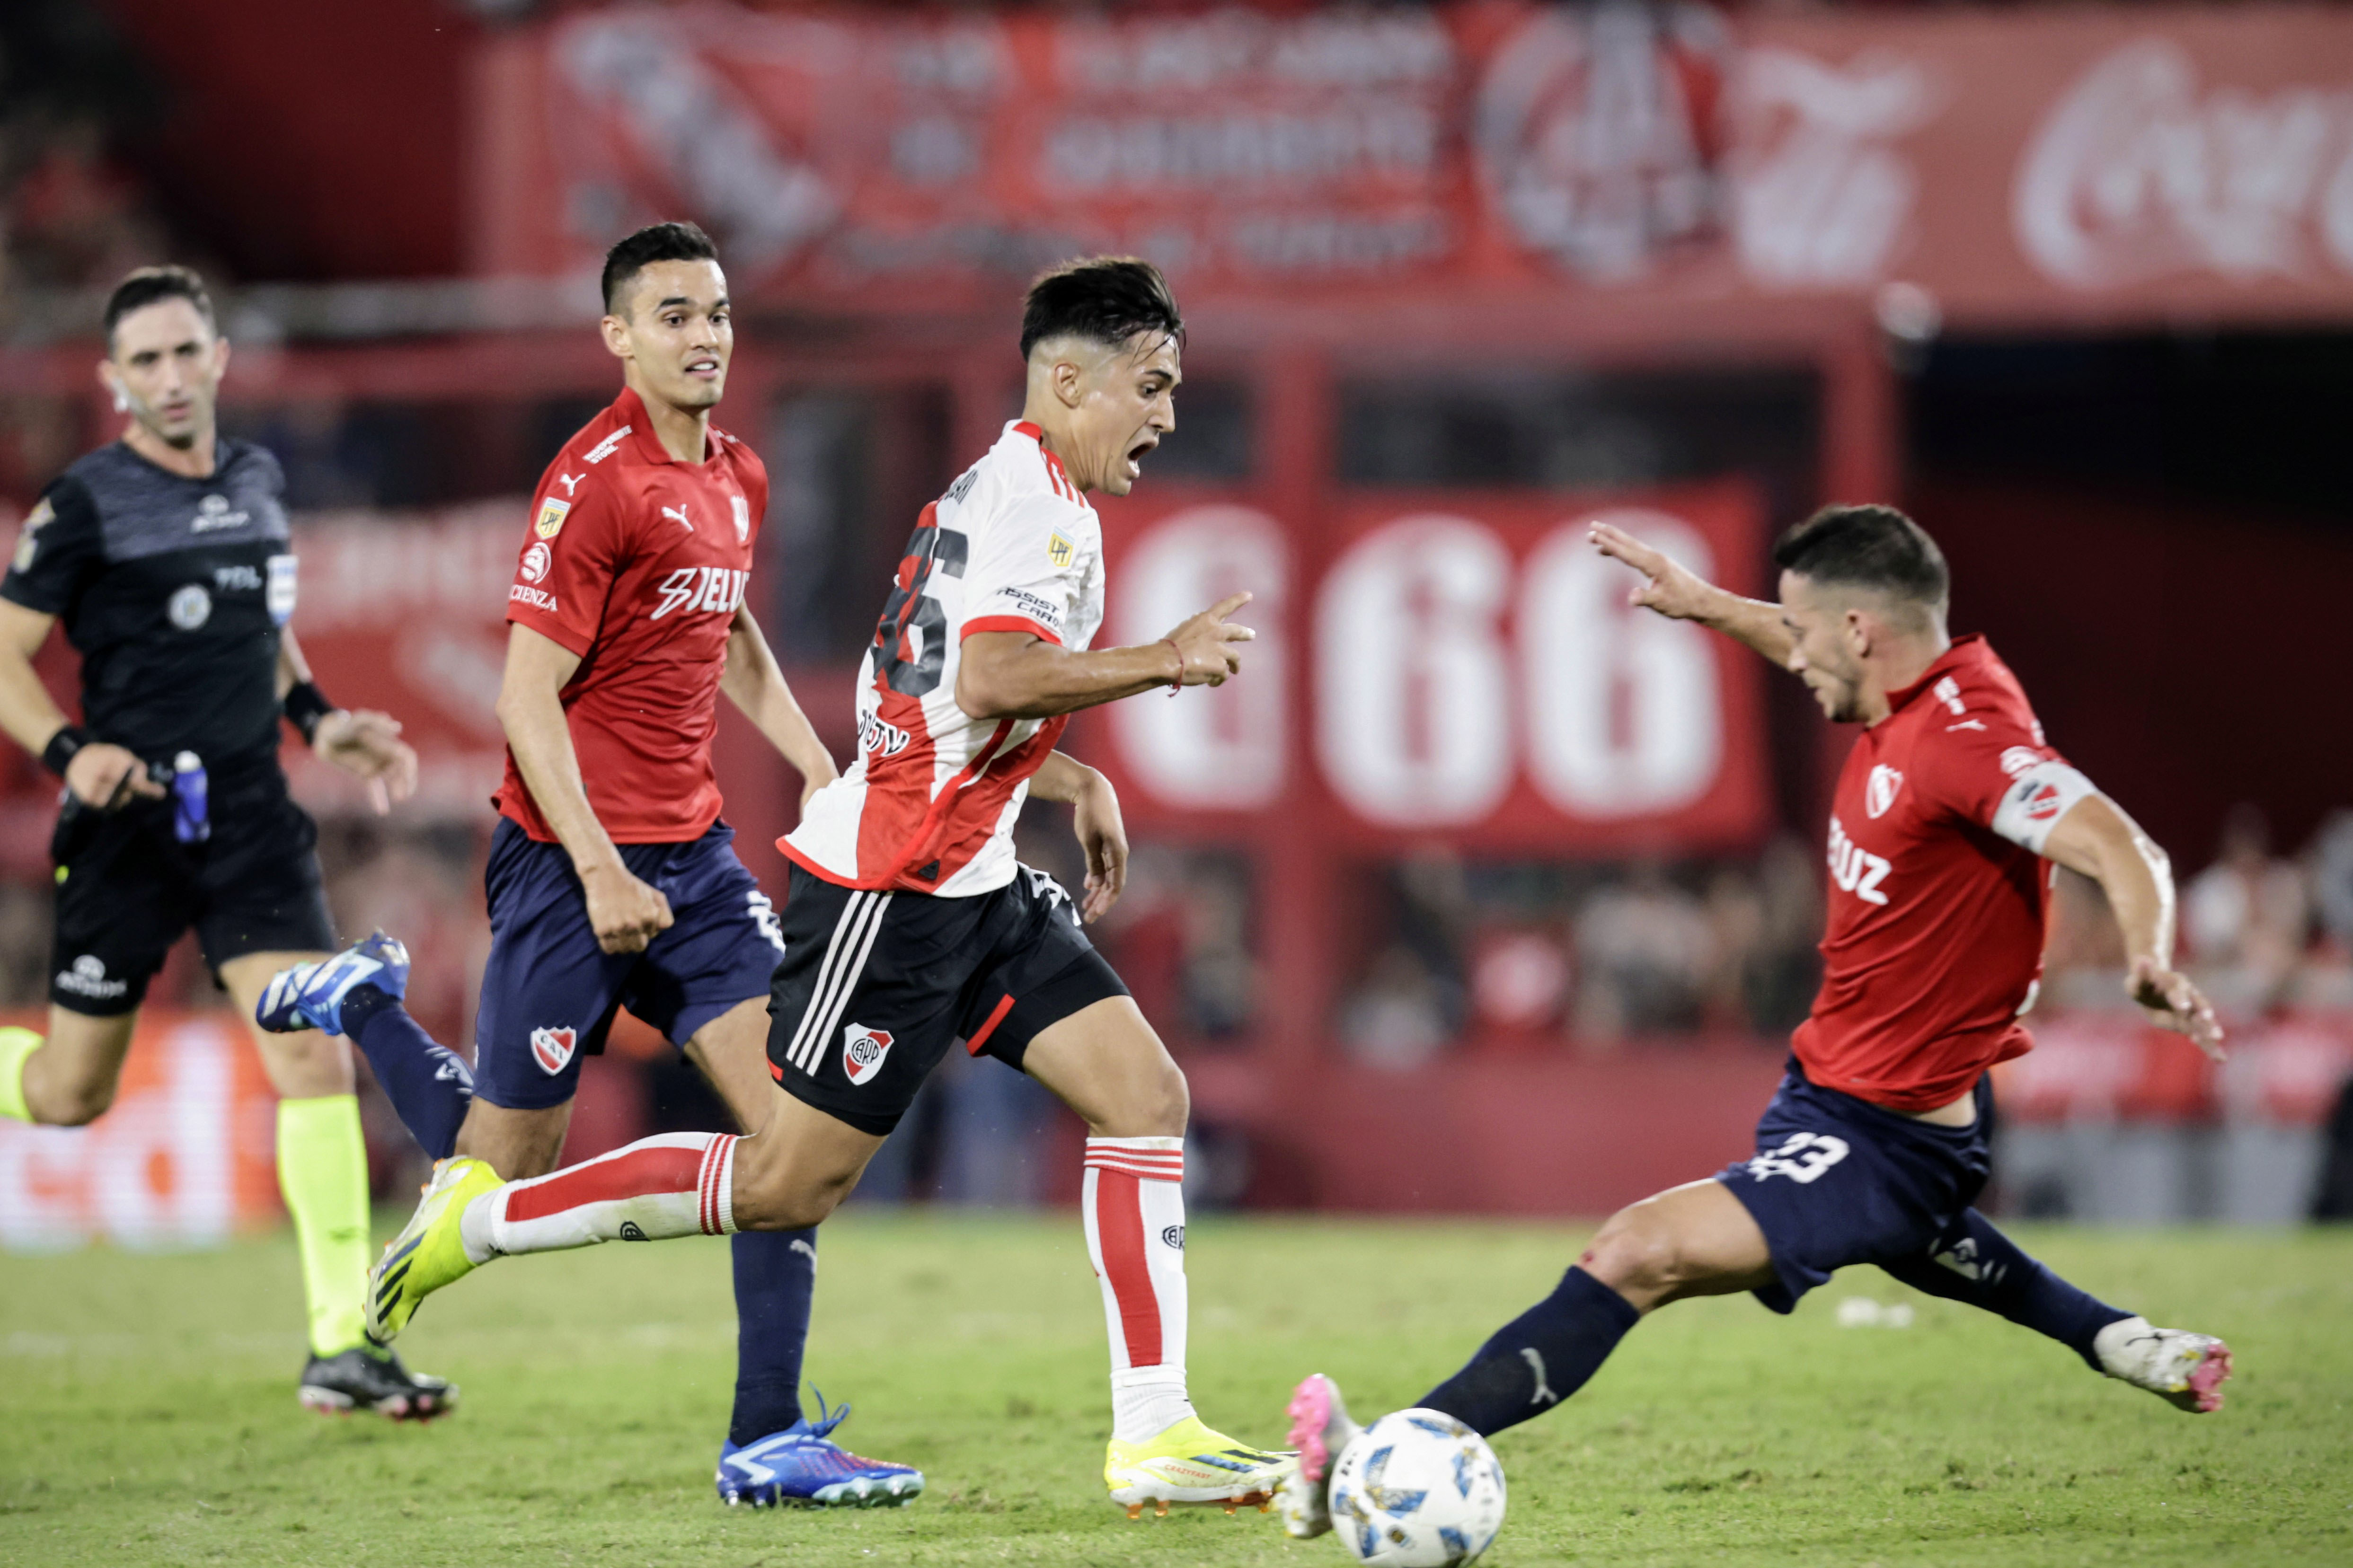 Independiente terminó con diez el clásico por la expulsión de su capitán Marcone sobre el final. Fue 1 a 1 en Avellaneda. 